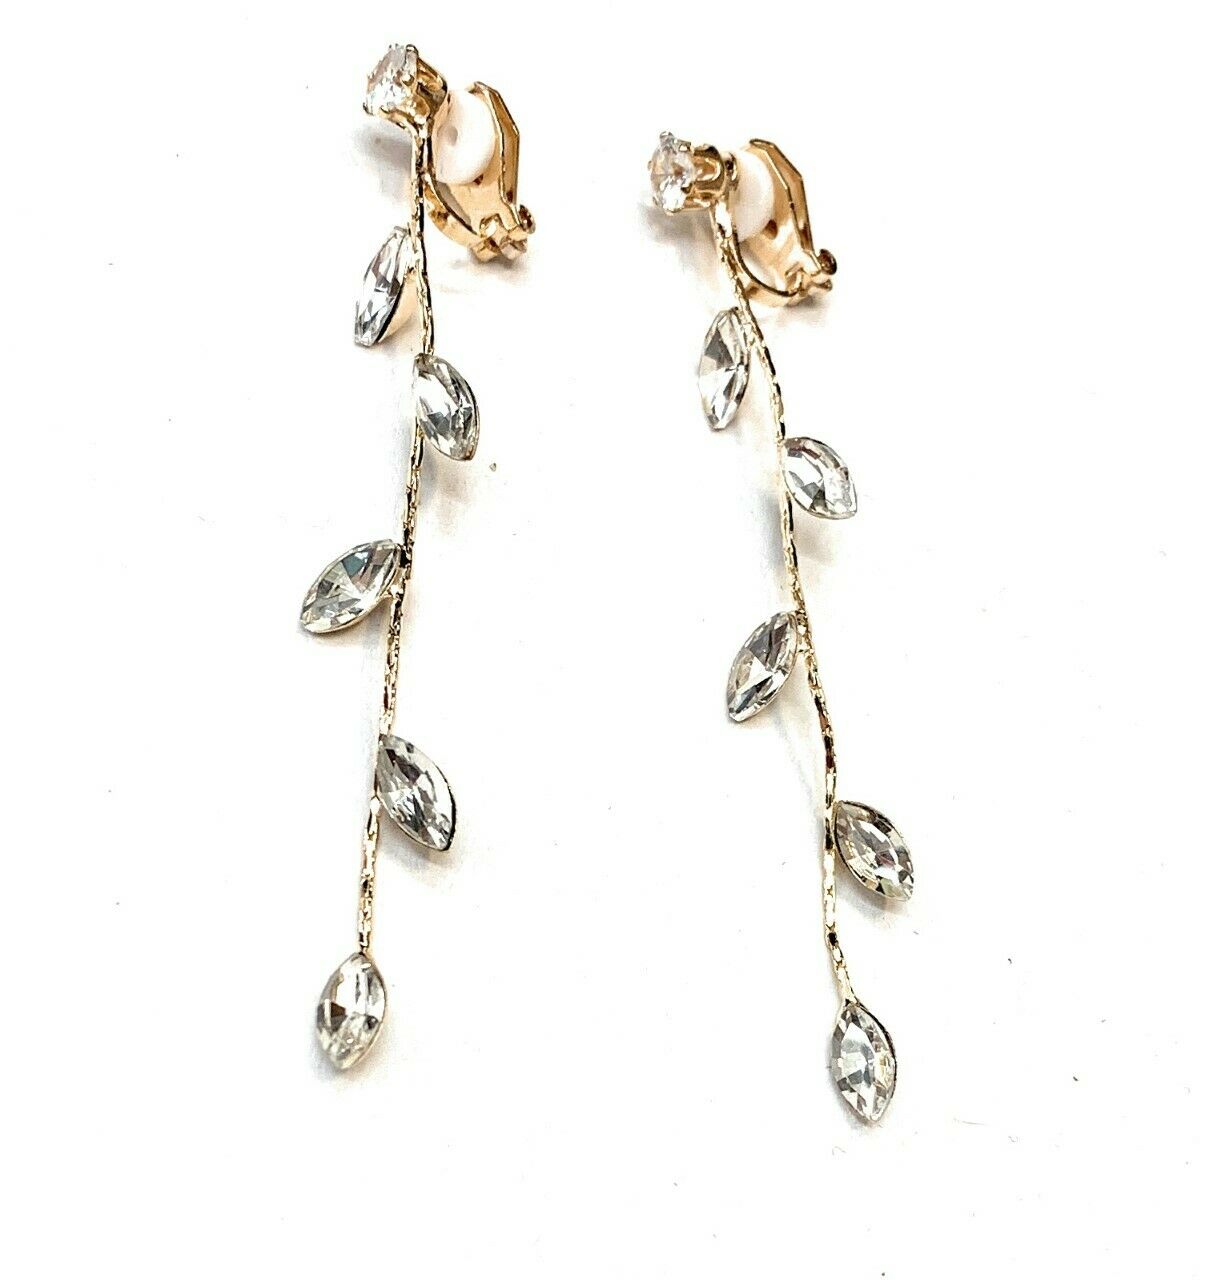 Zircon Crystal Leaf Drop Long Dangle Clip On Party Earrings Gift